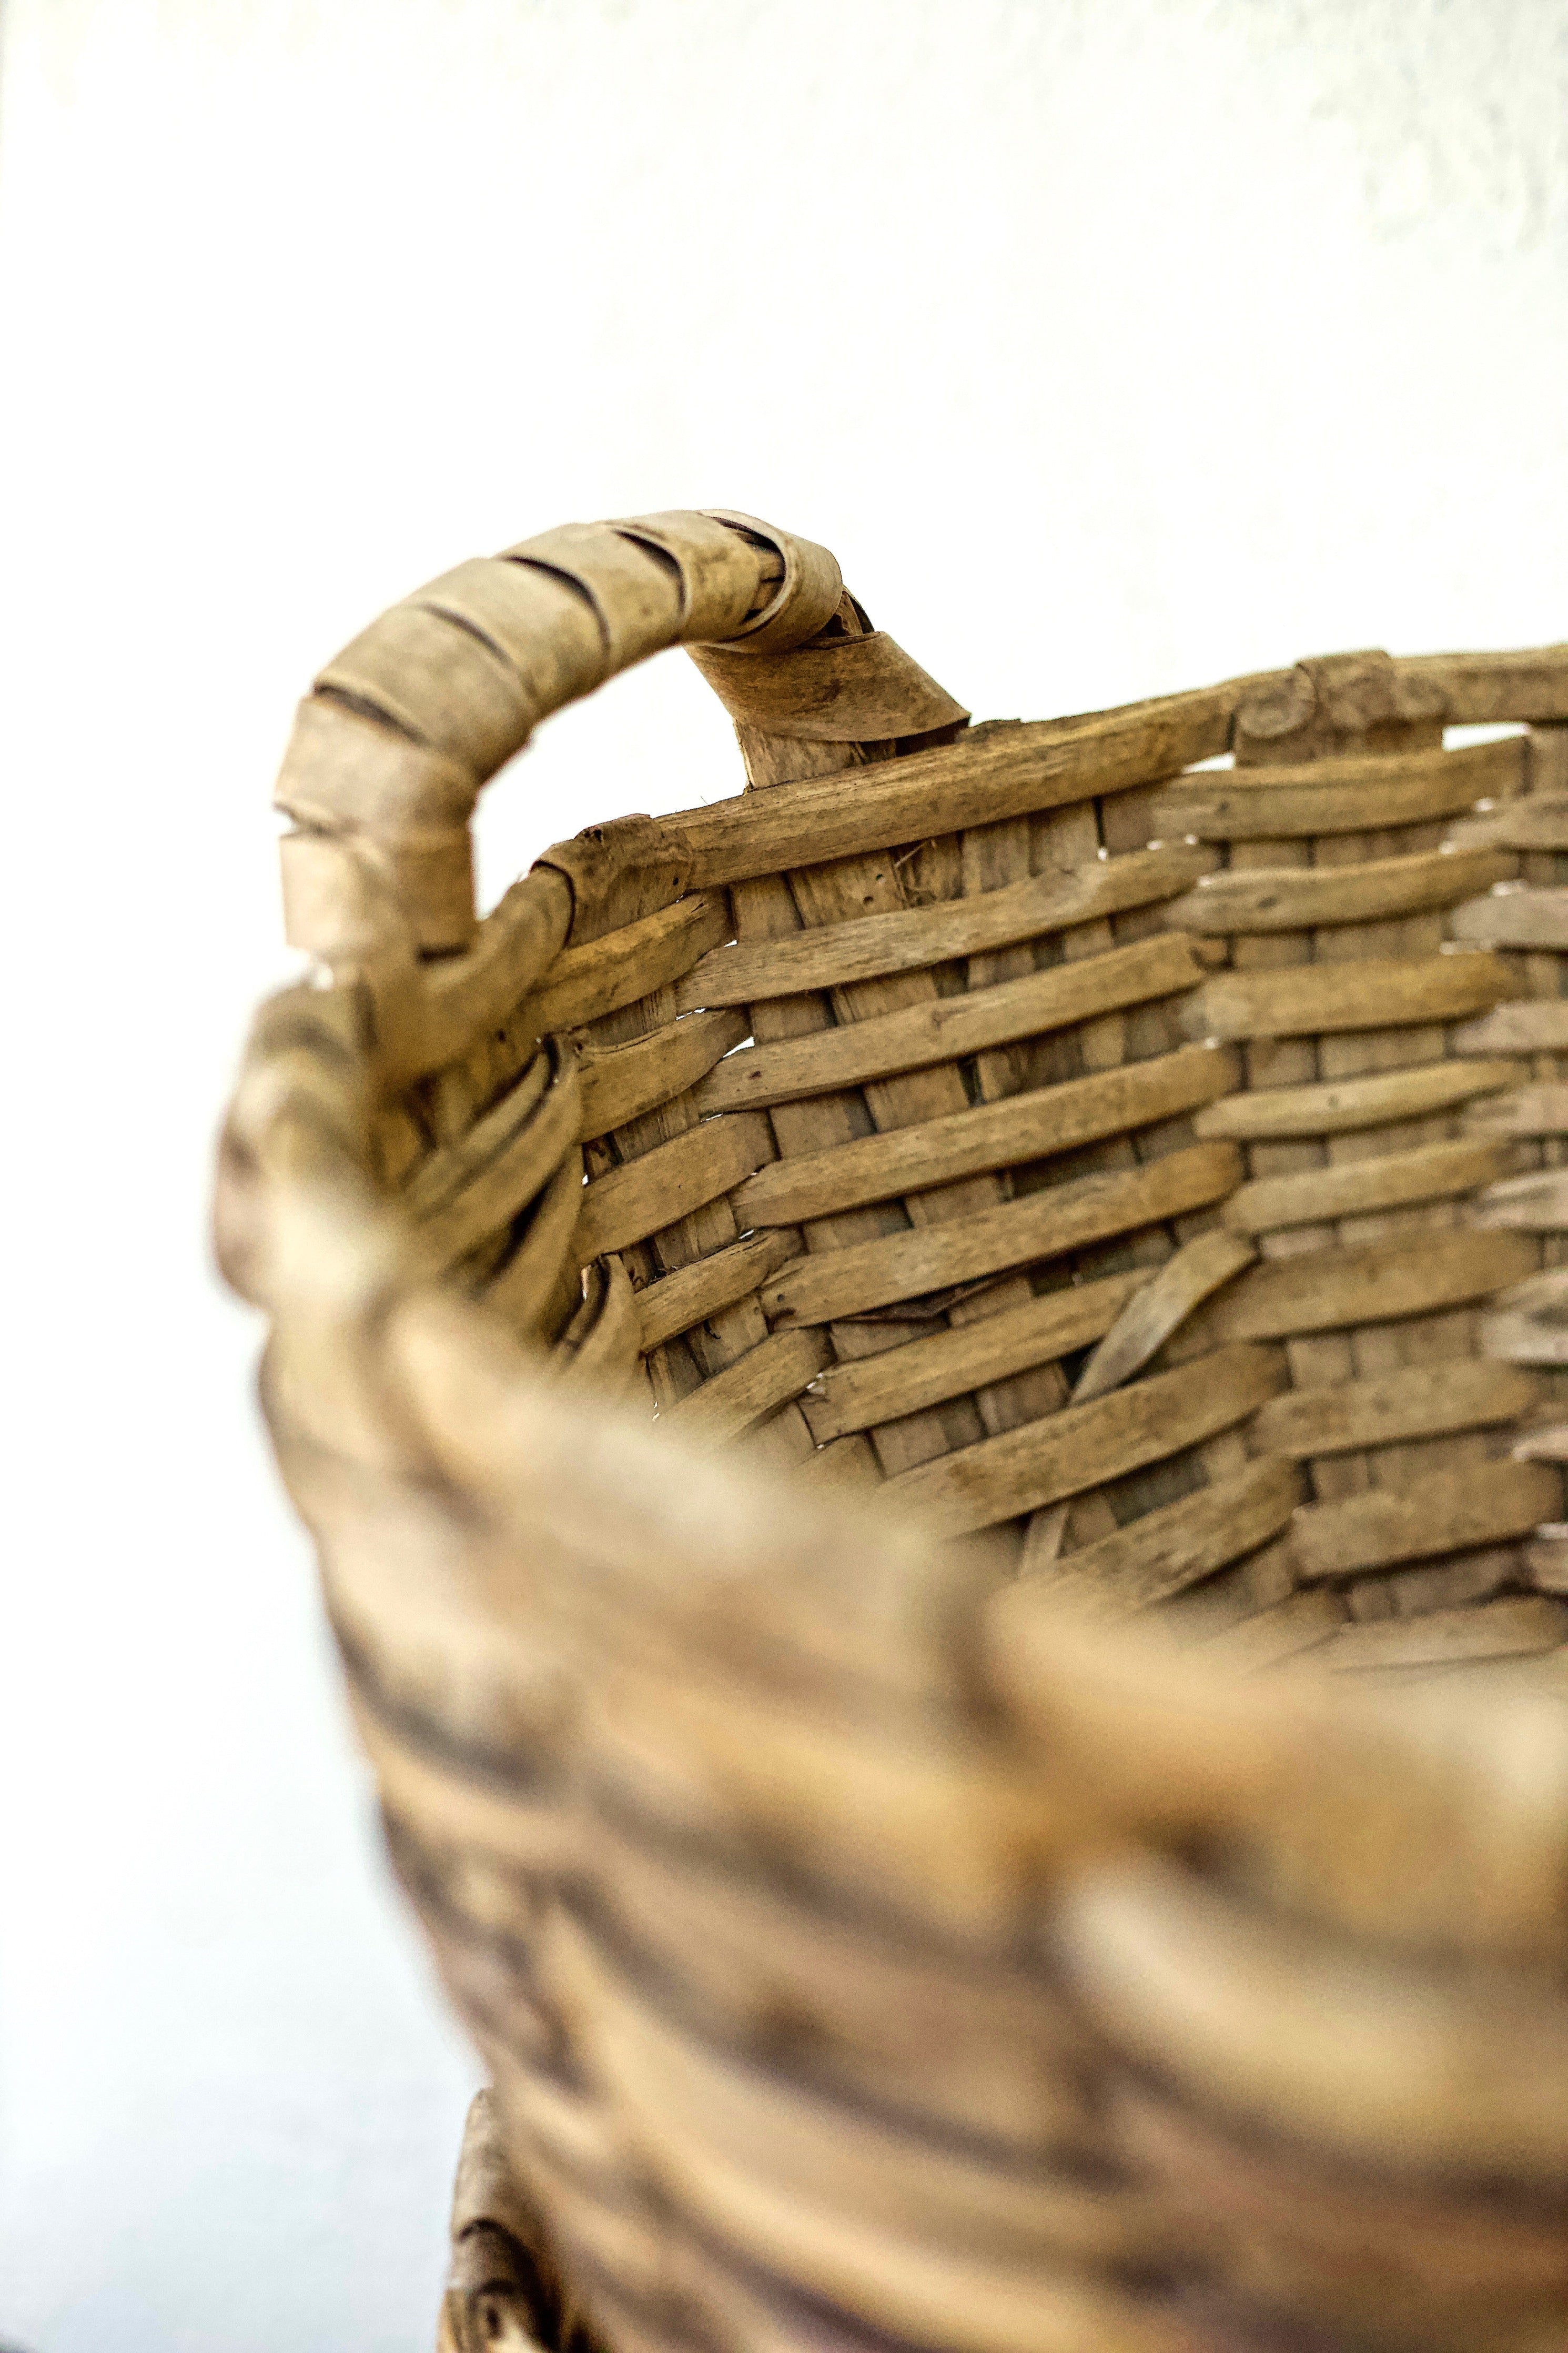 Baskets - Harvest